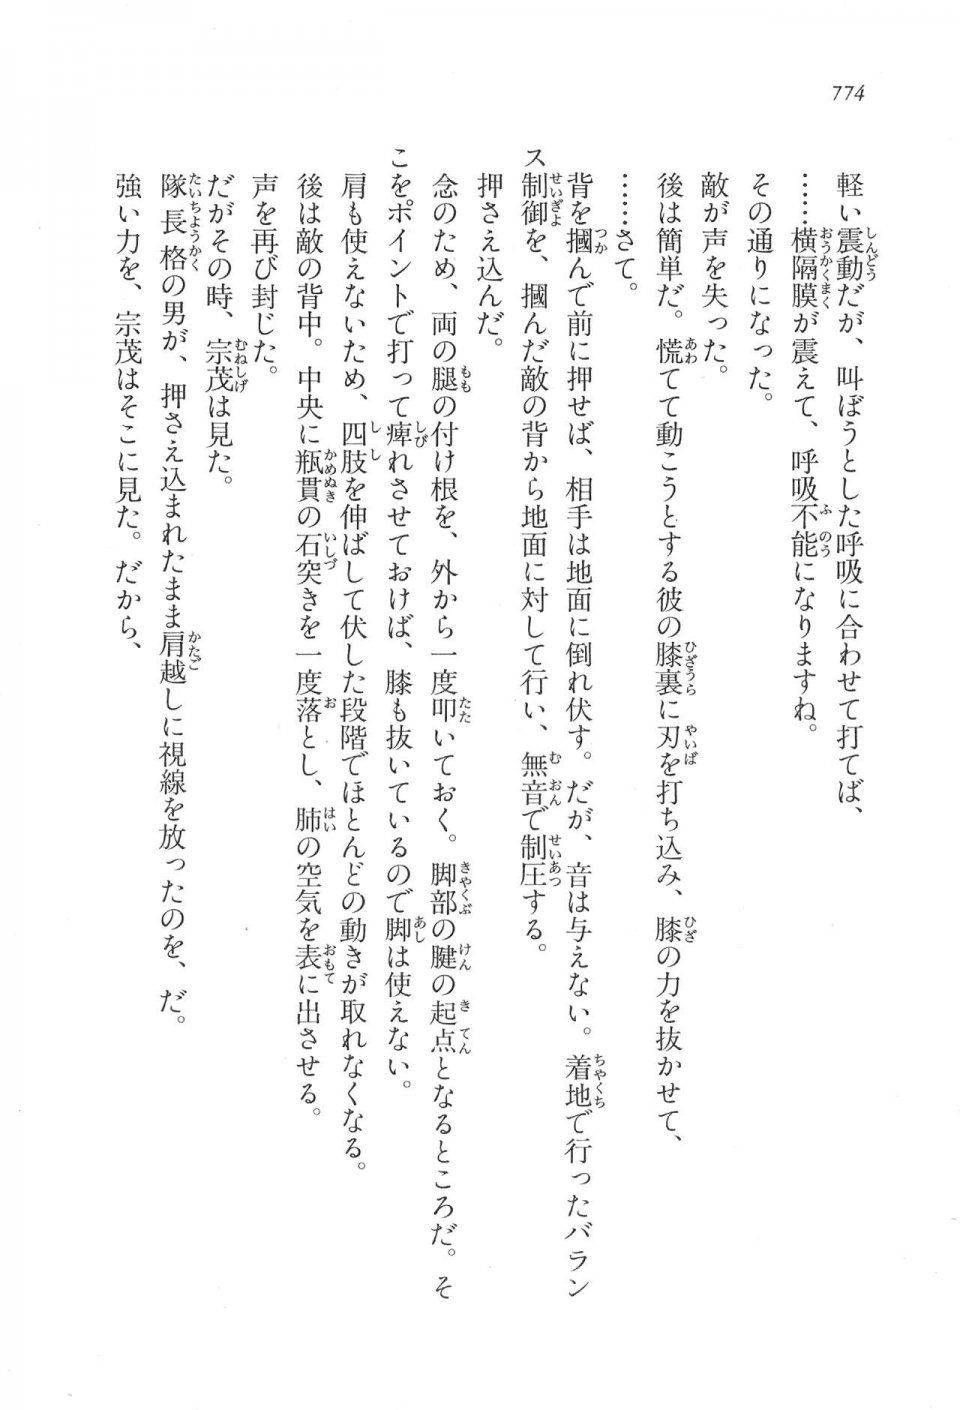 Kyoukai Senjou no Horizon LN Vol 17(7B) - Photo #776